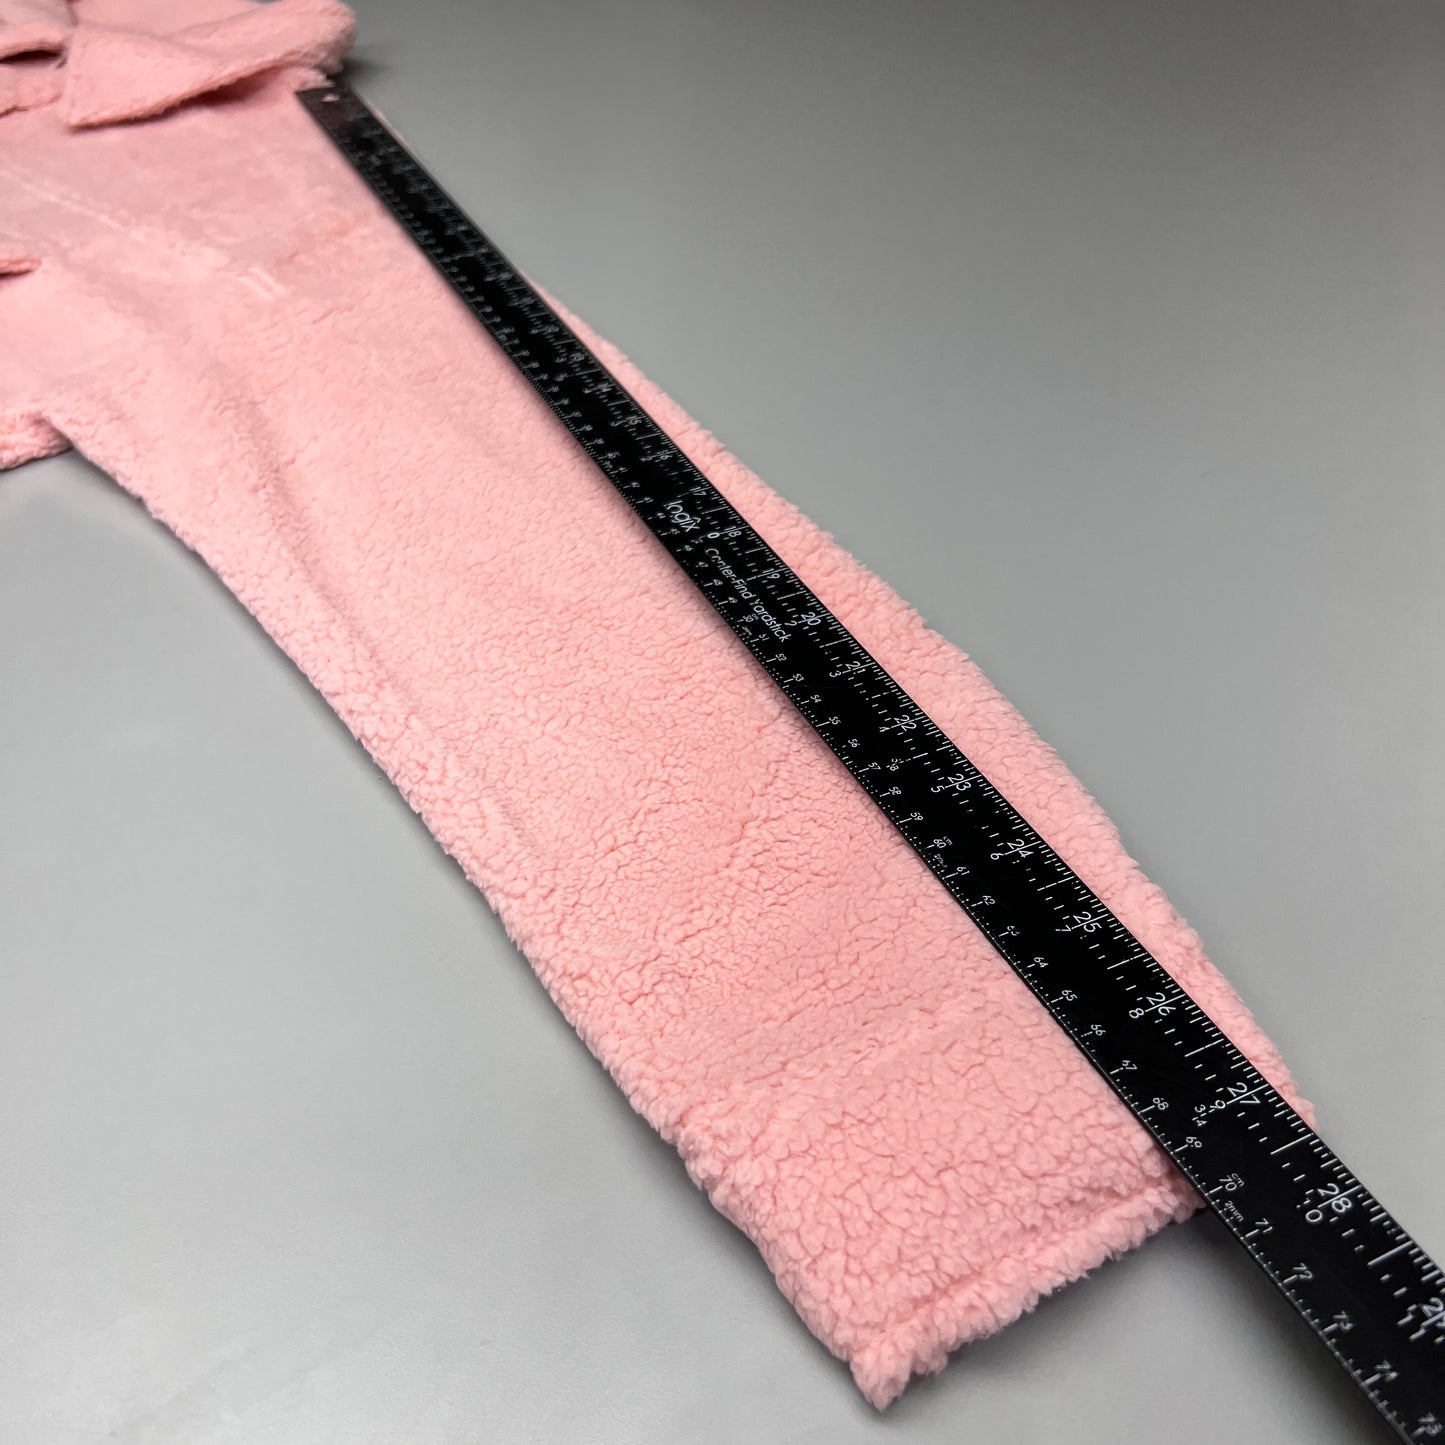 PINK LILY Fleece Button-up Jacket Women's Sz L Mauve Pink PL177 (New)